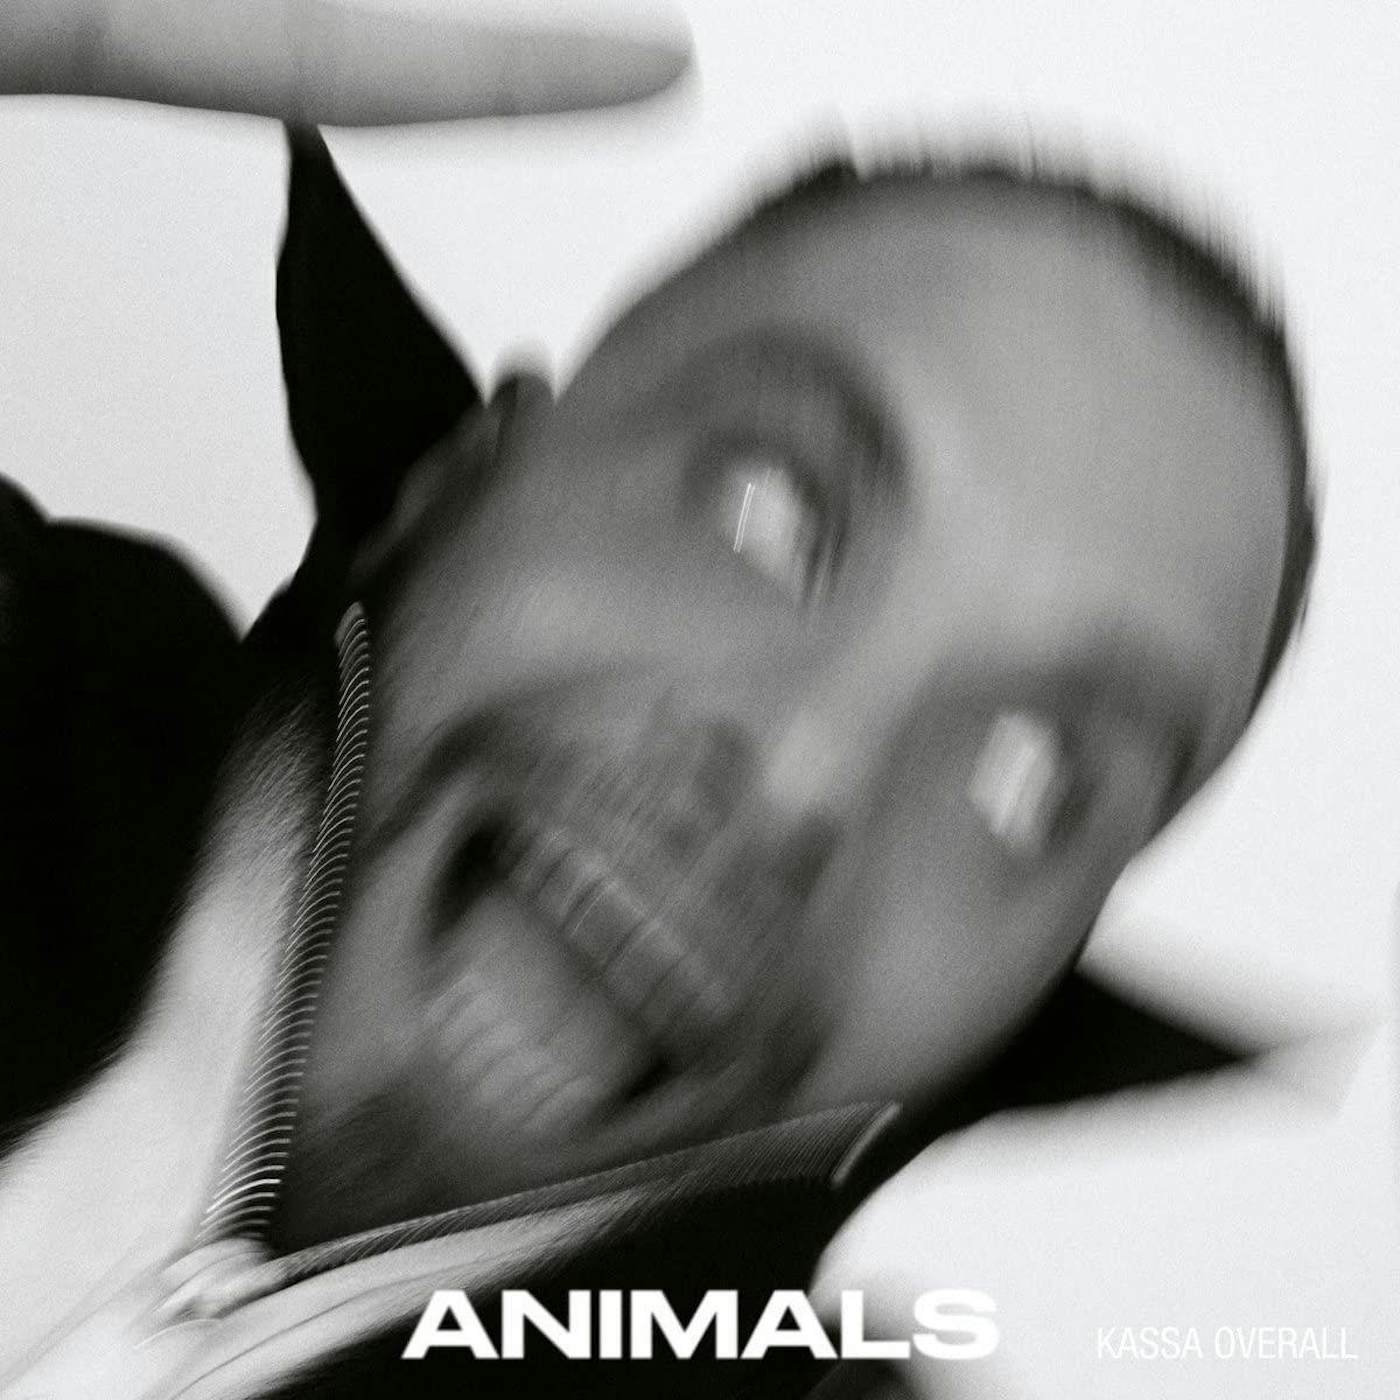 Kassa Overall ANIMALS (CLEAR VINYL) Vinyl Record